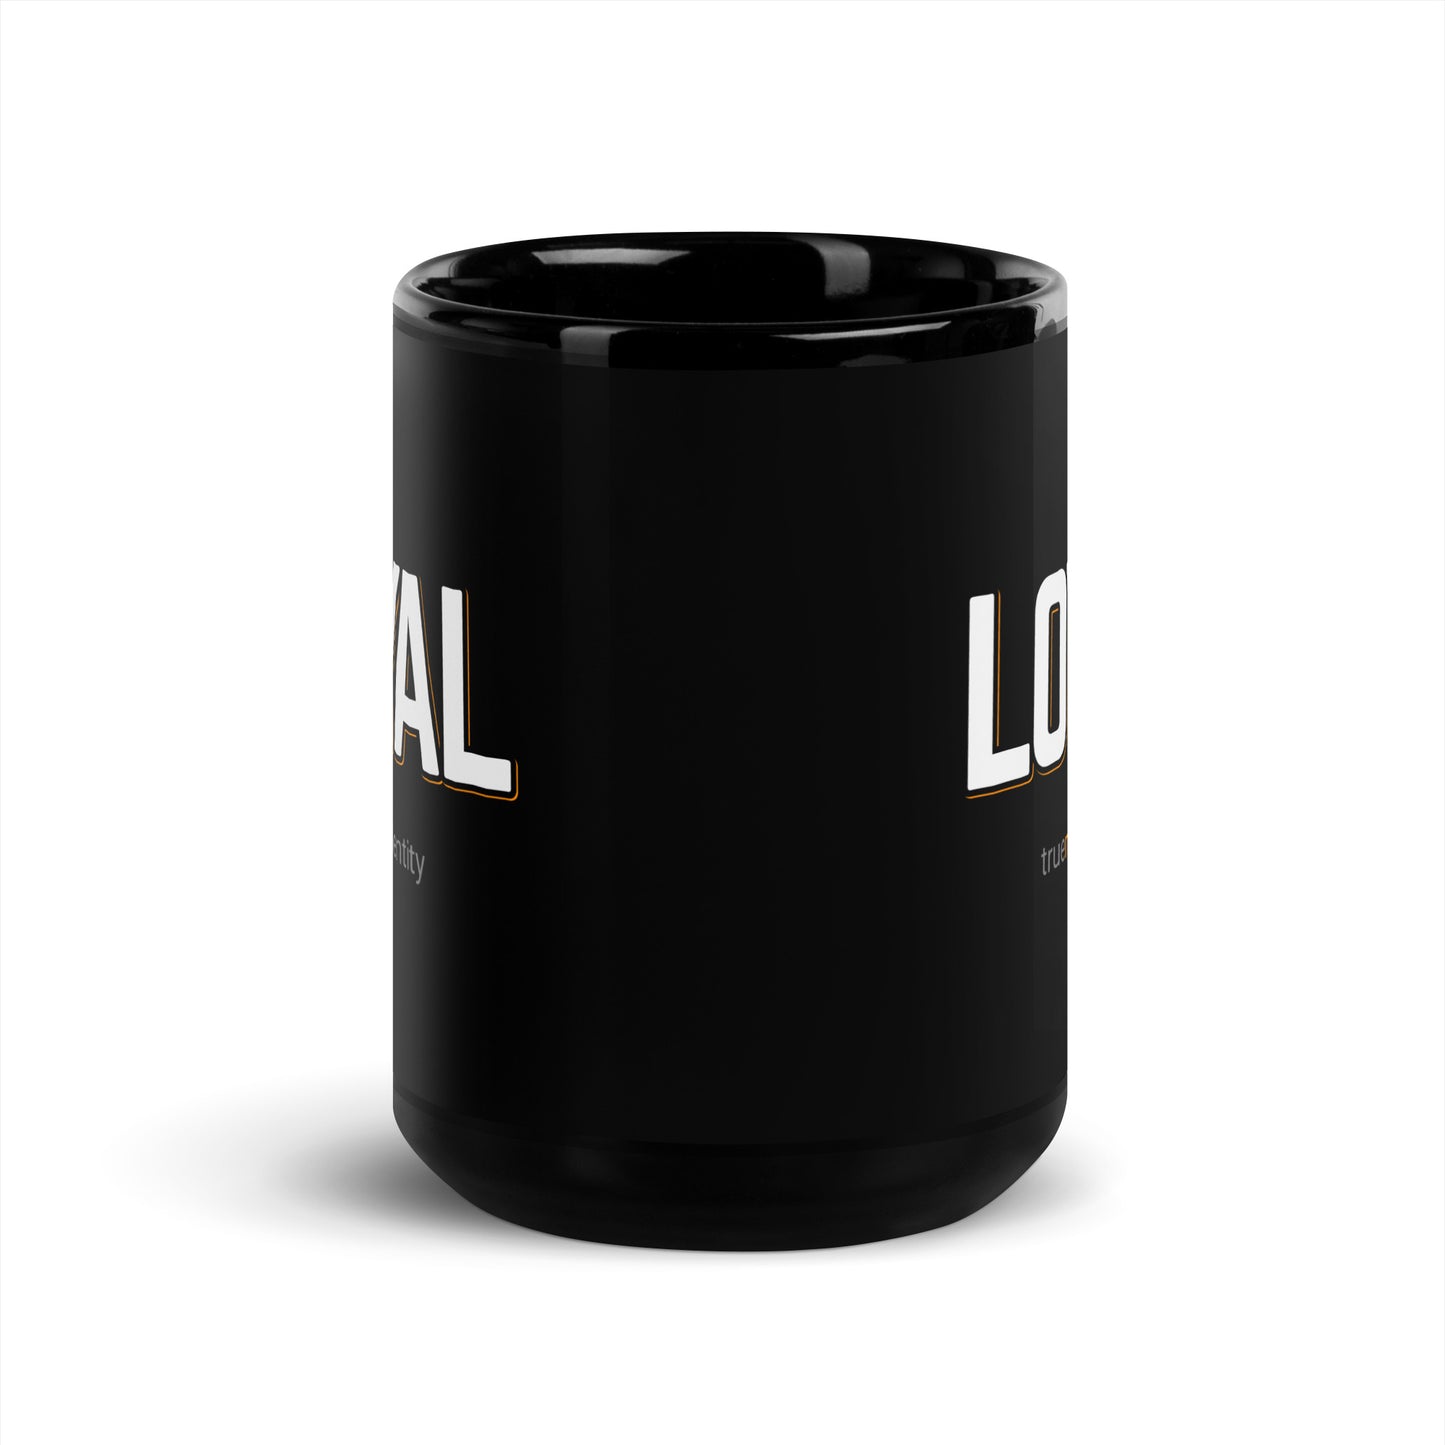 LOYAL Black Coffee Mug Bold 11 oz or 15 oz